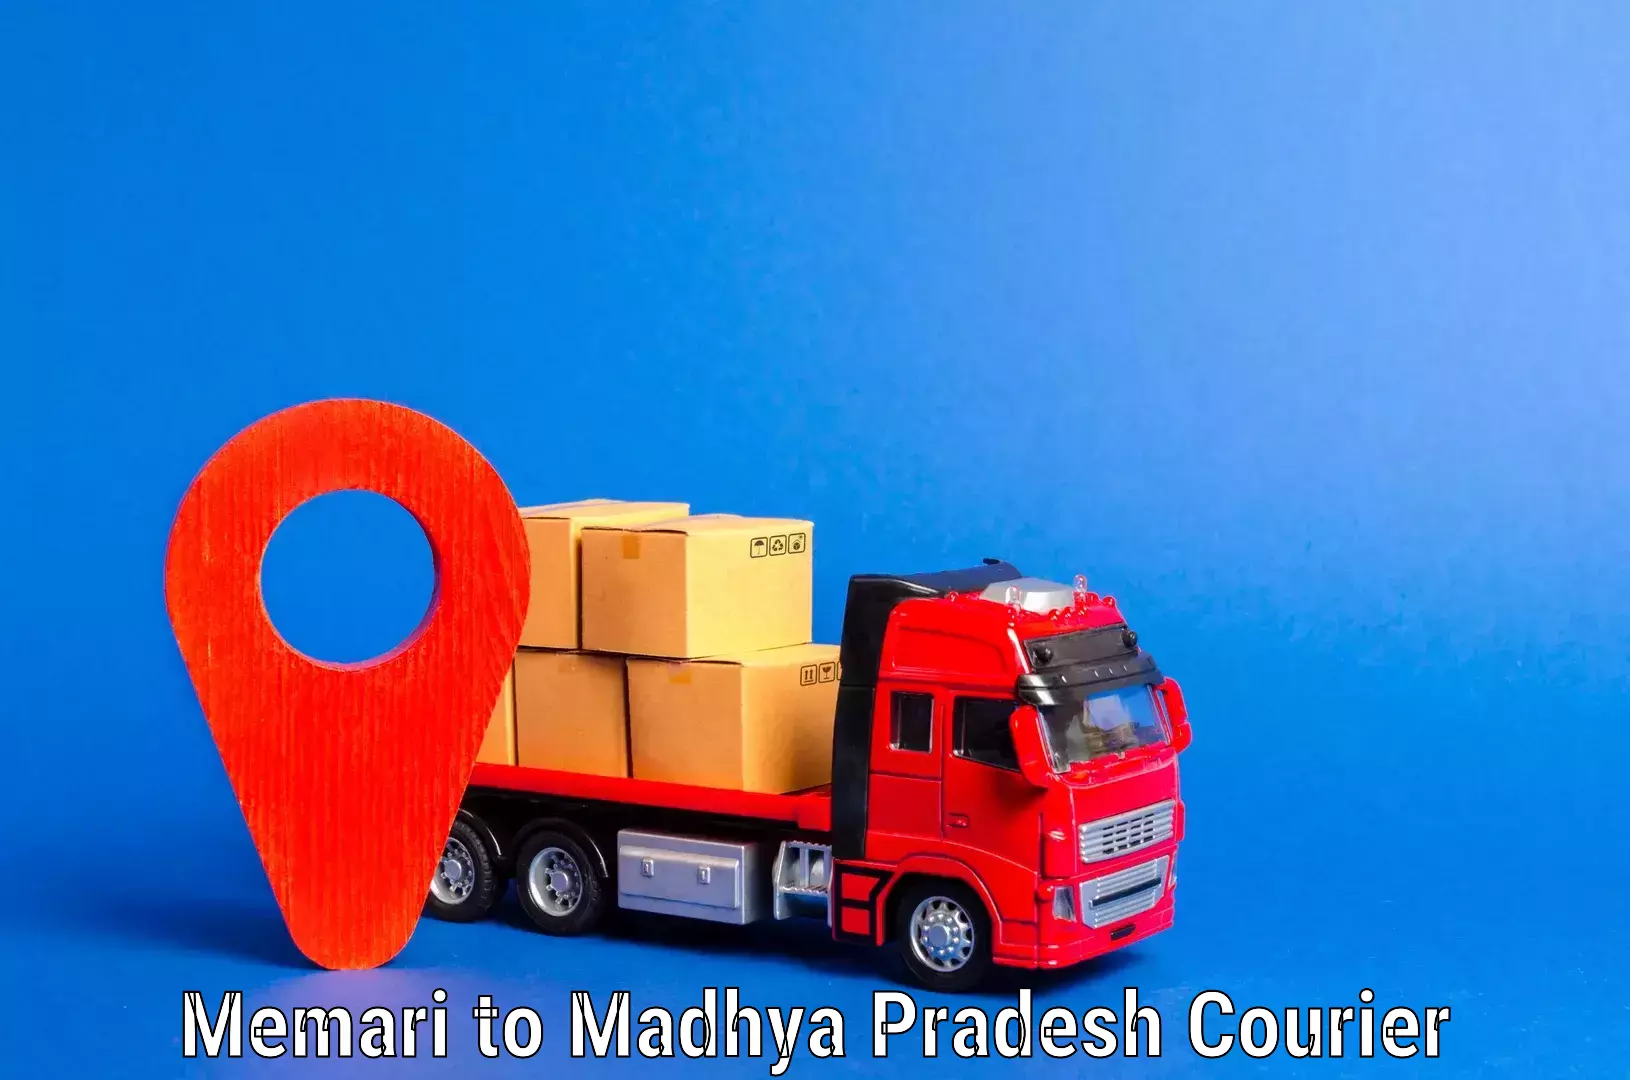 Furniture moving experts Memari to Madhya Pradesh